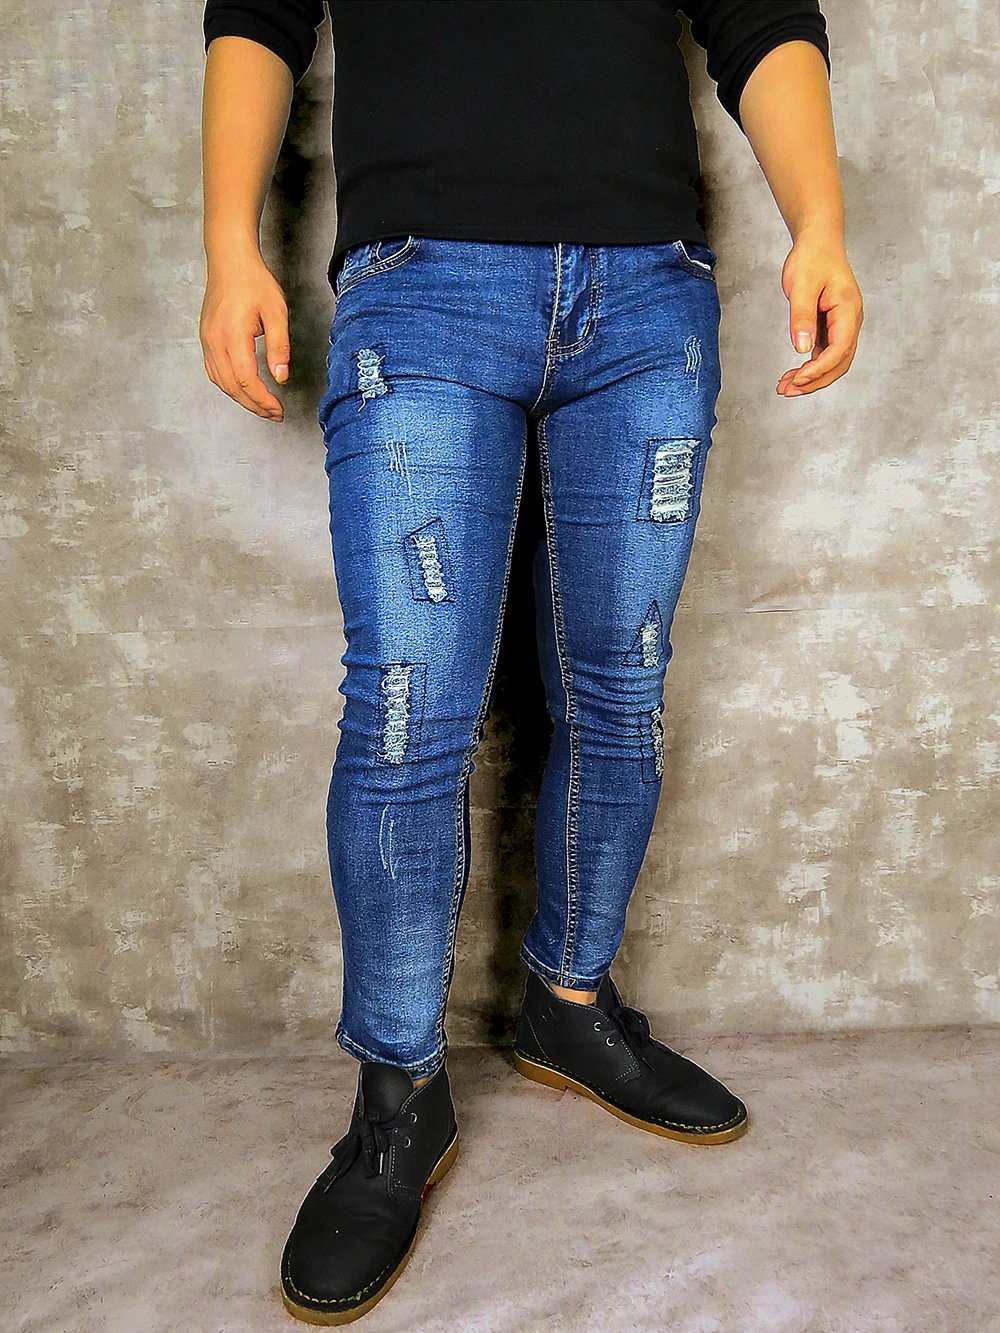 Мужские джинсы в стиле хип-хоп, брендовые обтягивающие джинсы, повседневные штаны, черные джинсы, Стрейчевые узкие брюки, большой размер, уличная одежда